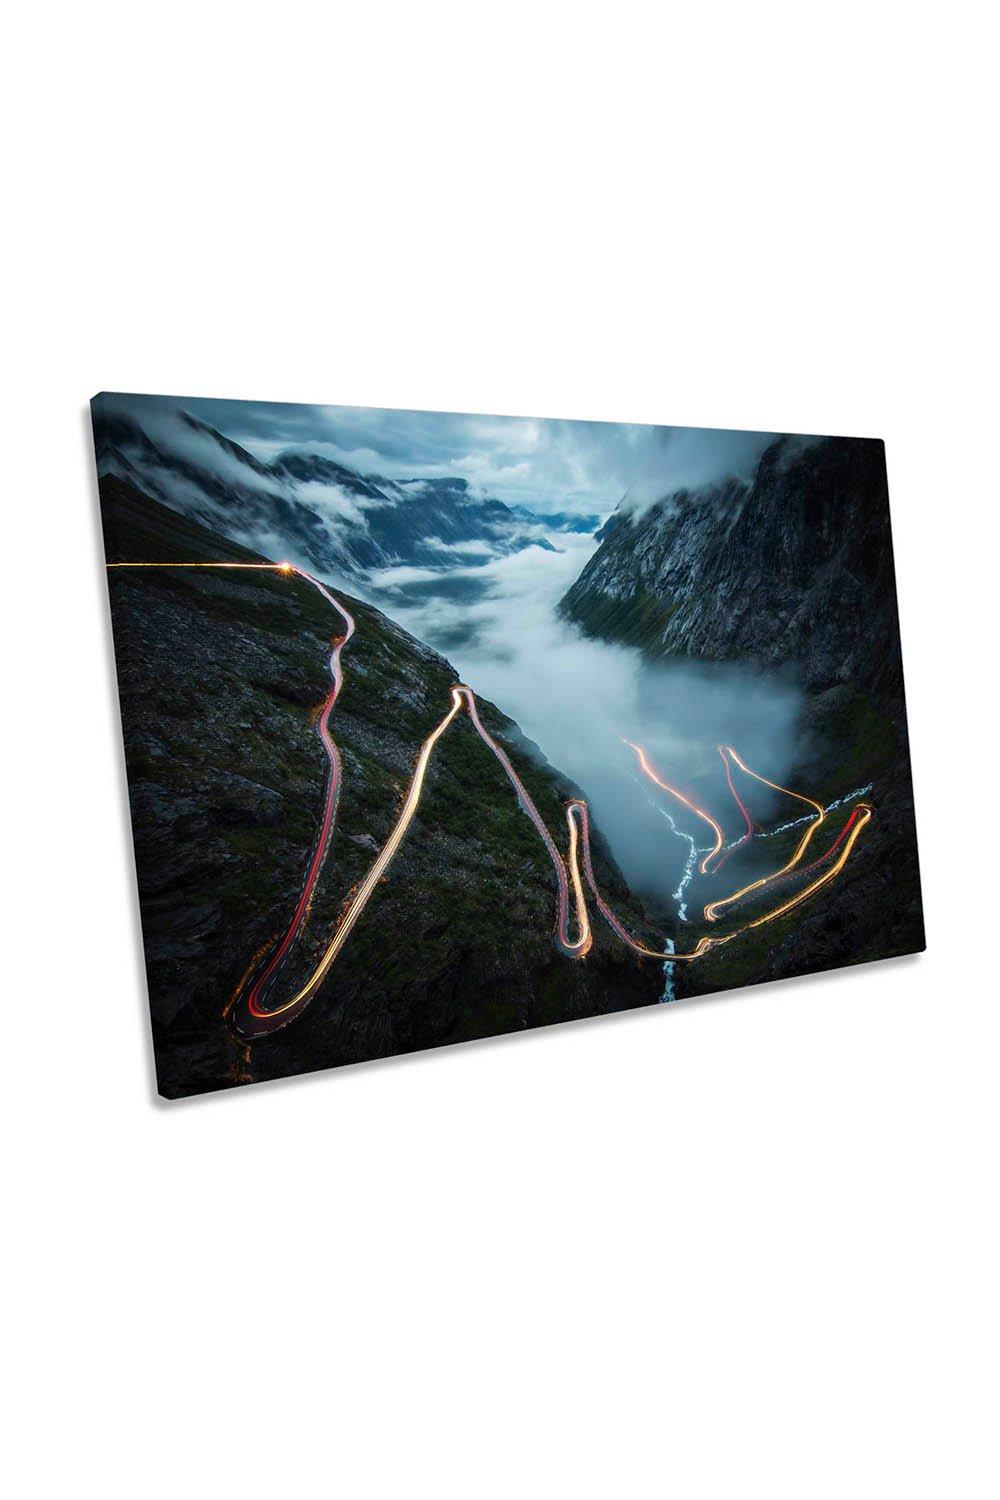 Trollstigen Norway Mountain Road Canvas Wall Art Picture Print